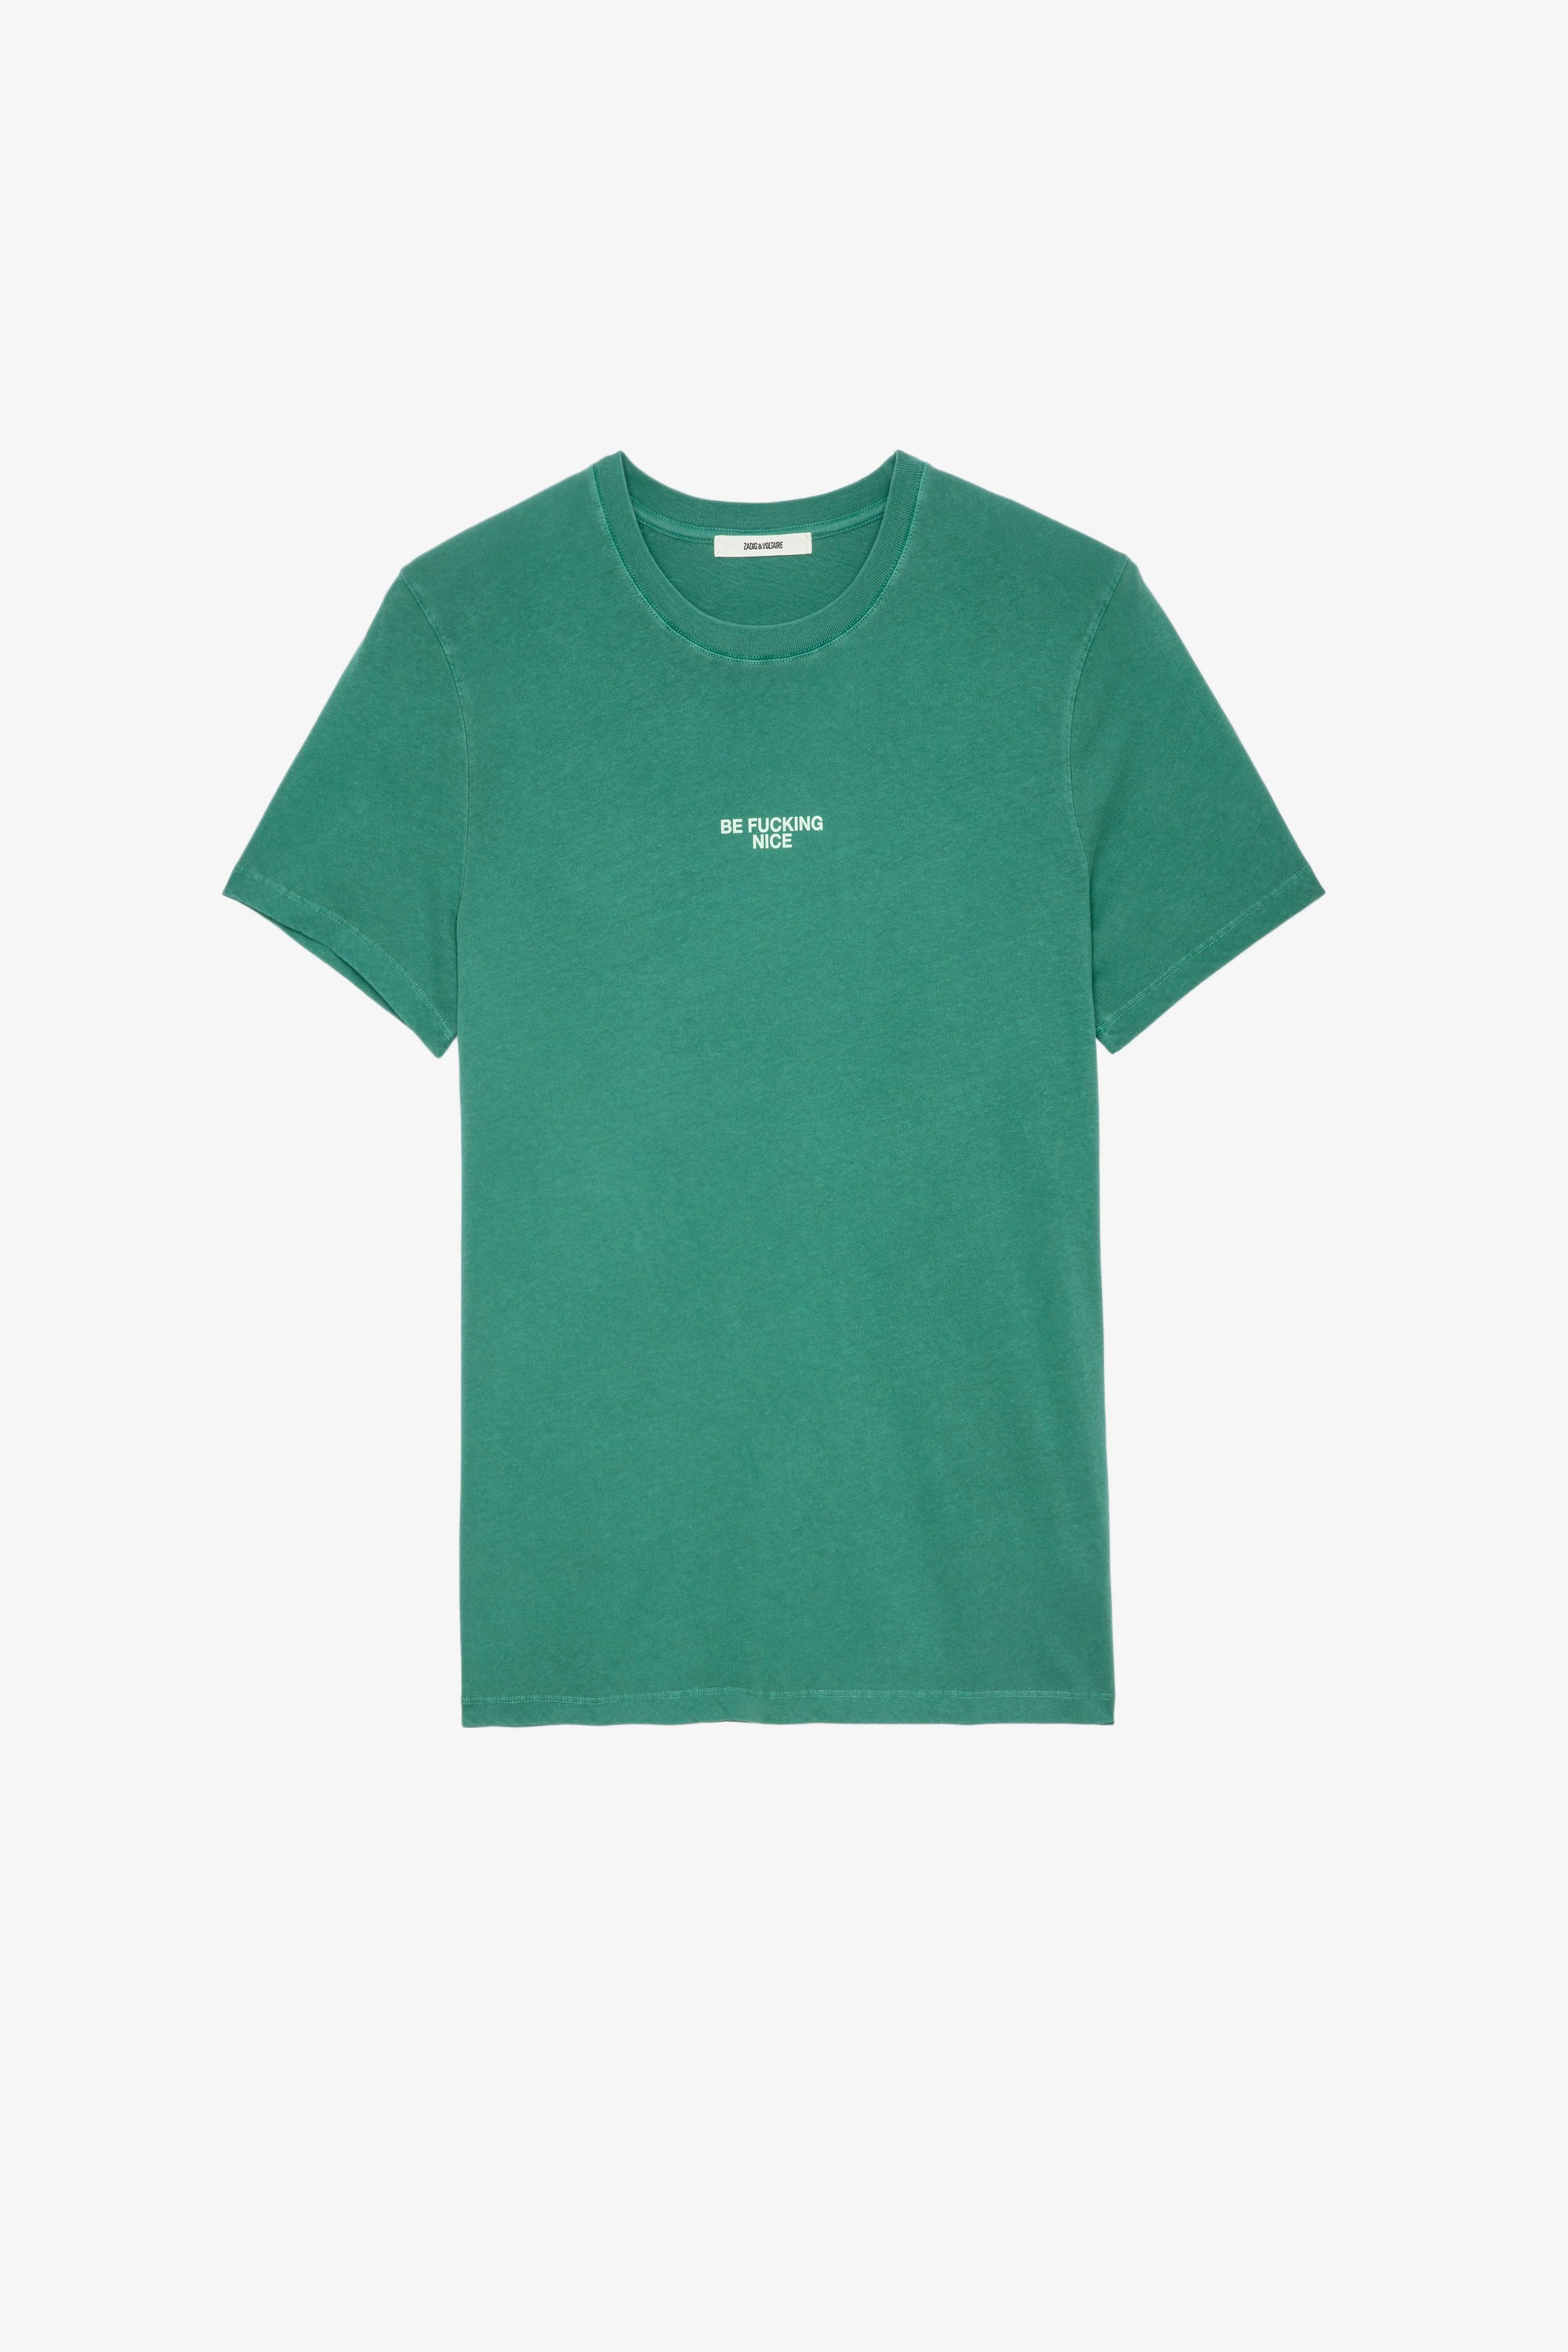 Ted Ｔシャツ グリーン コットン 「Be fucking nice」 Tシャツ メンズ